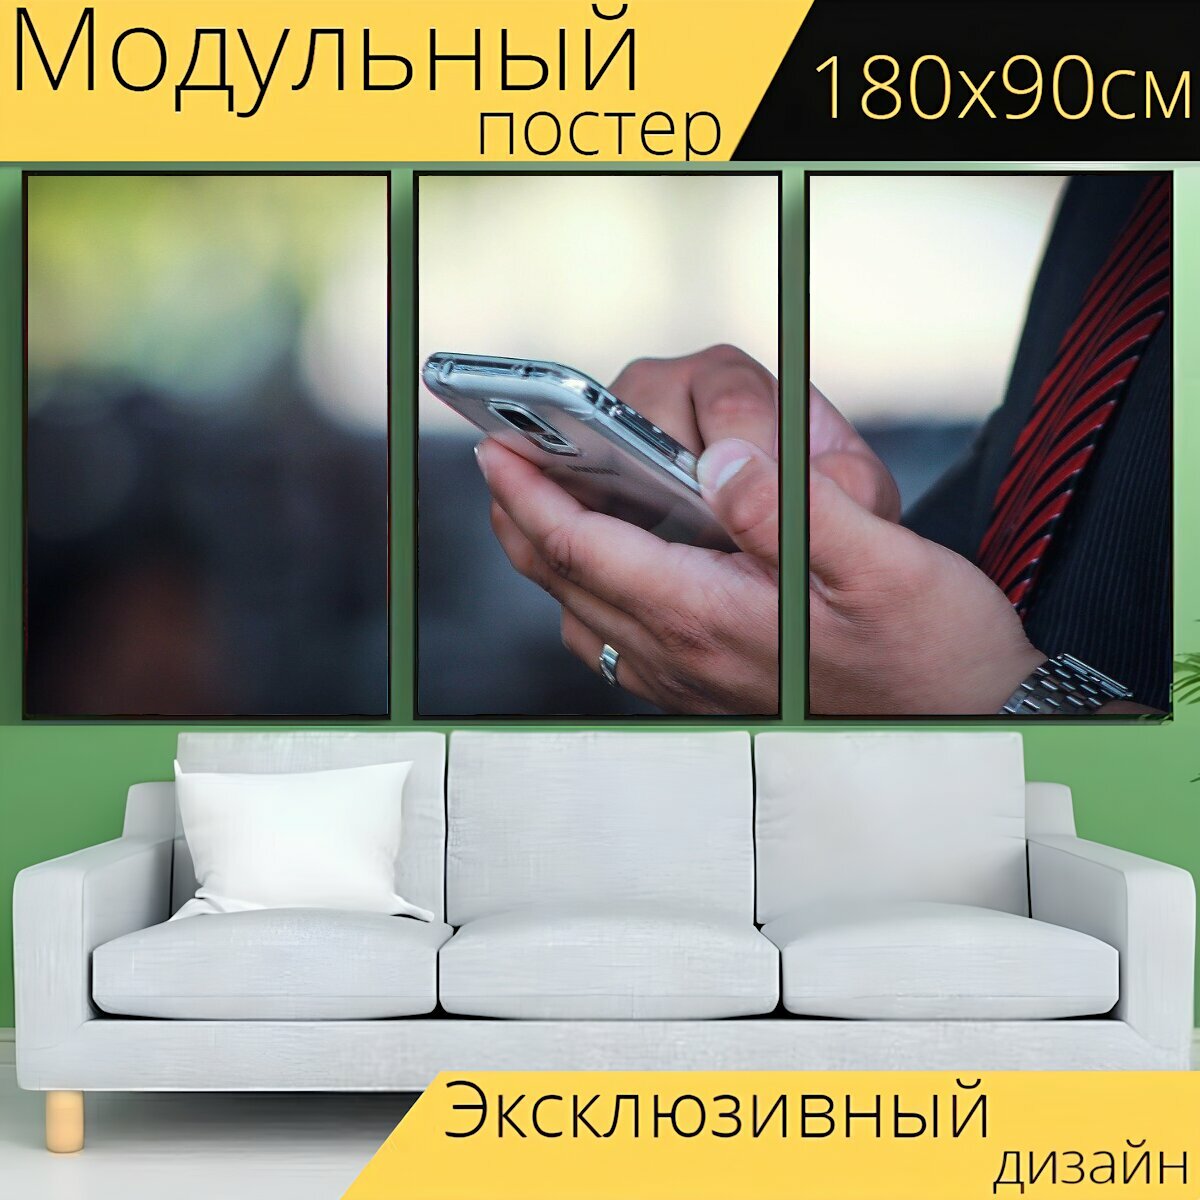 Модульный постер "Мобильный телефон, бизнес, телефон" 180 x 90 см. для интерьера